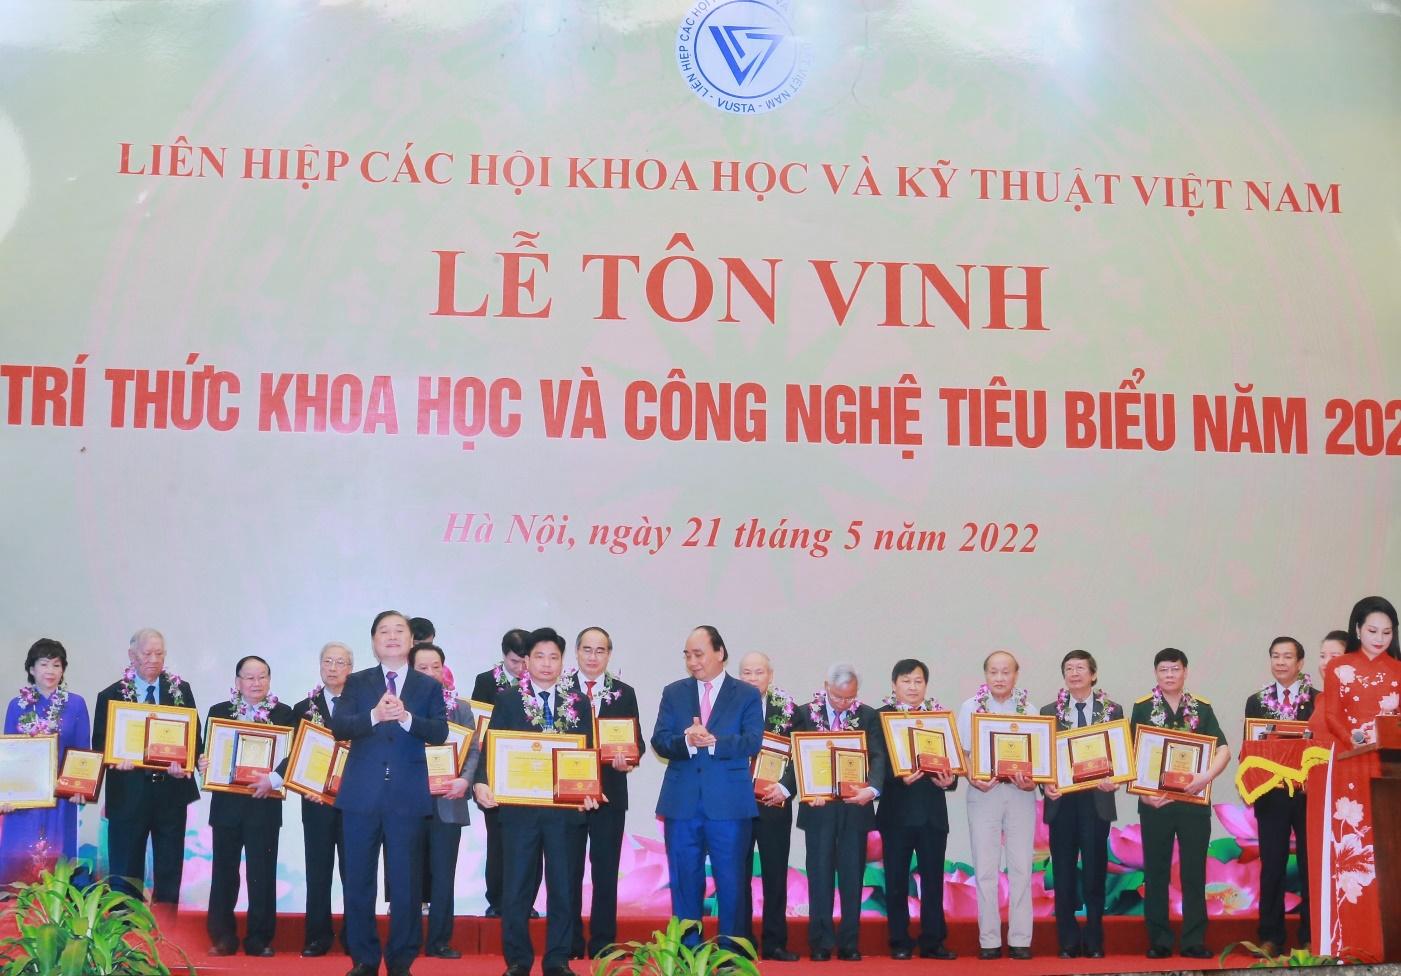 PGS.TS Lê Viết Báu, Chủ tịch Hội đồng trường Trường Đại học Hồng Đức được tôn vinh trí thức khoa học và công nghệ tiêu biểu năm 2022